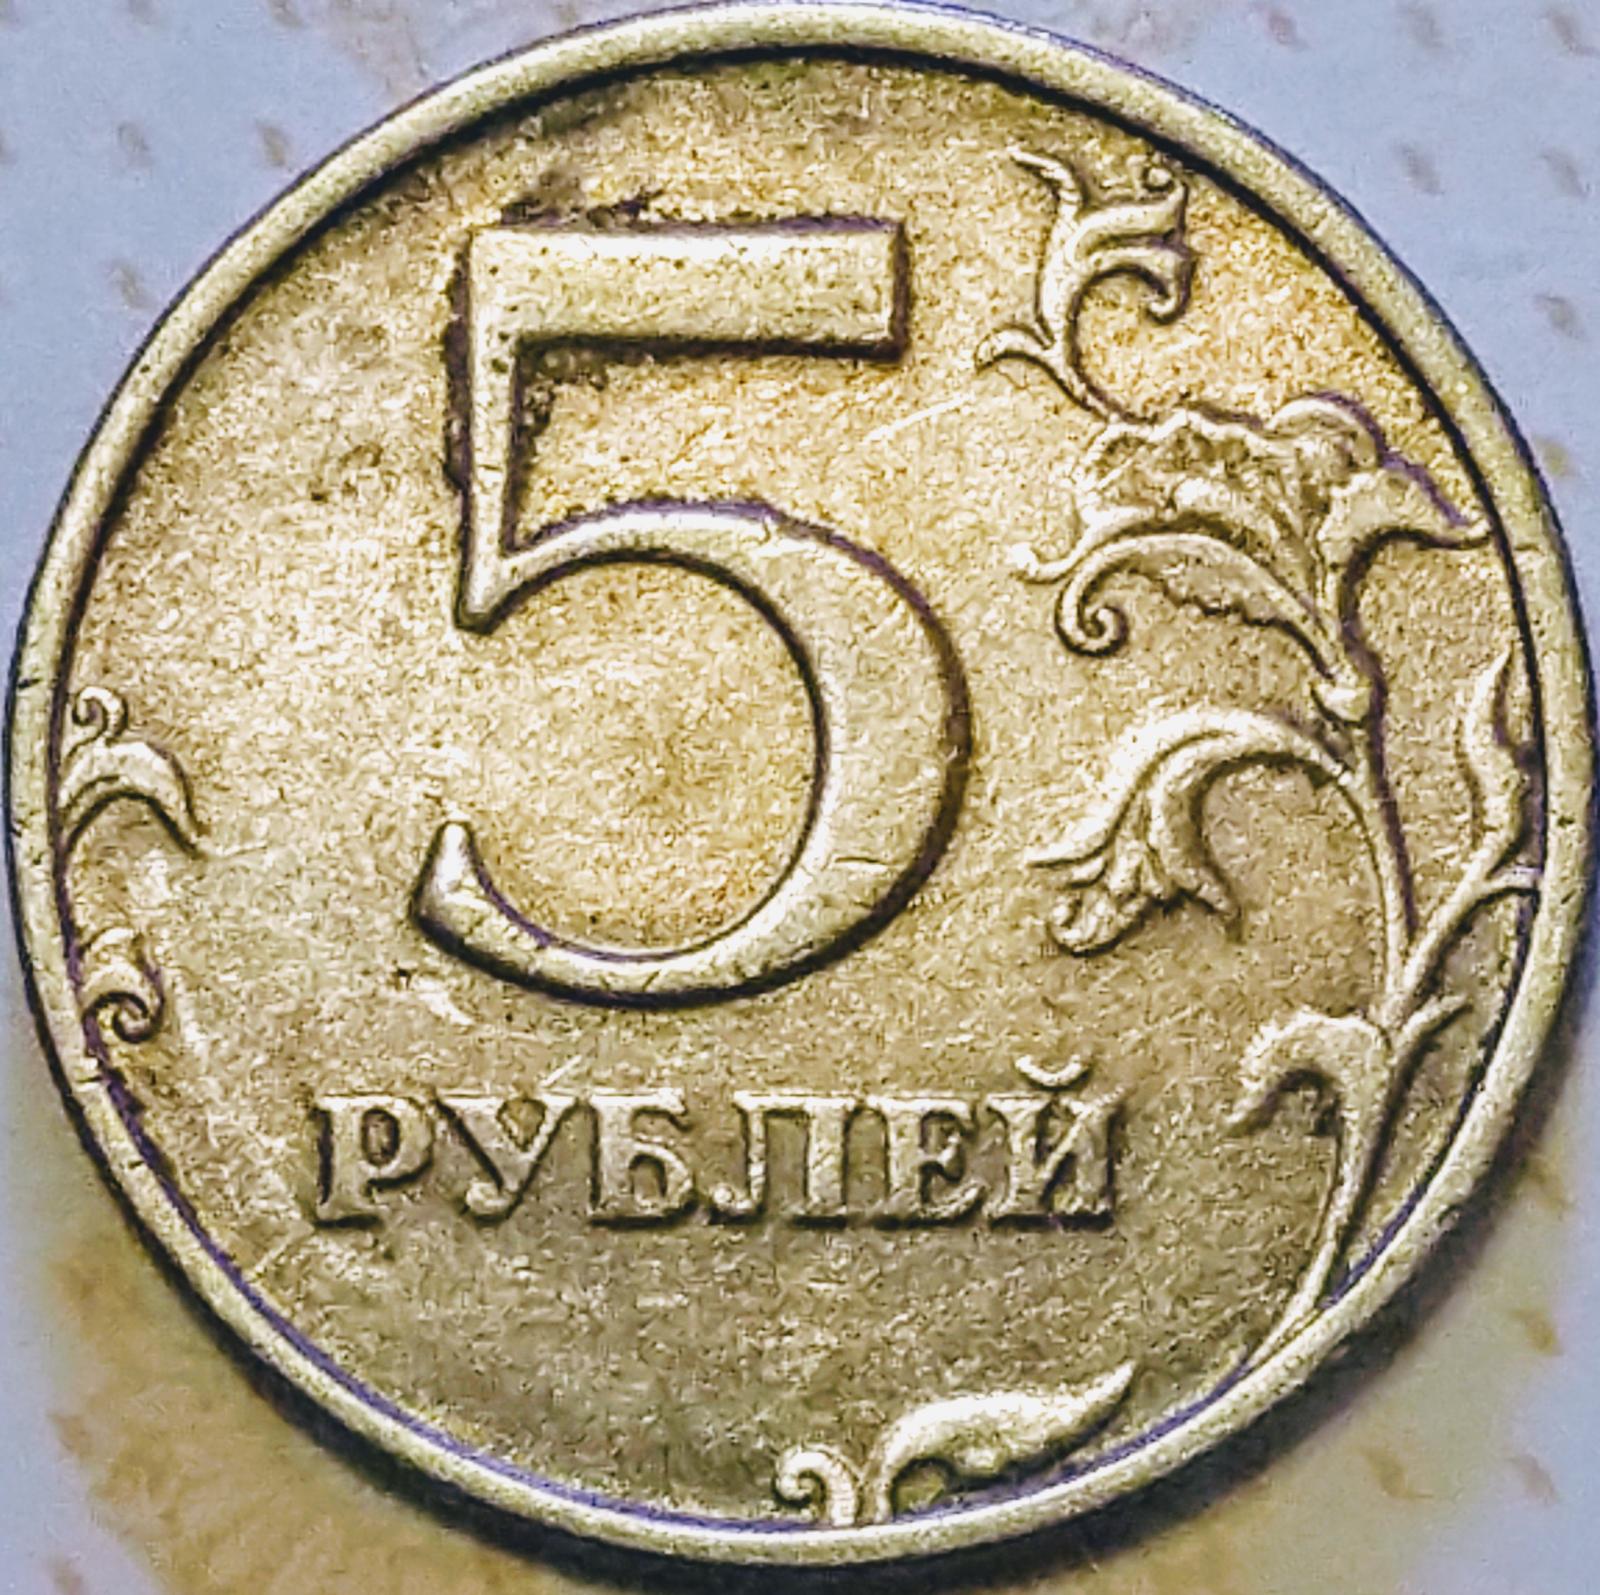 Сообщение 5 рублей. Монета 5 рублей 1998 СПМД. 5 Рублей 1998 года. Штемпель 2.23 5 рублей. 5 Рублей с малой точкой.